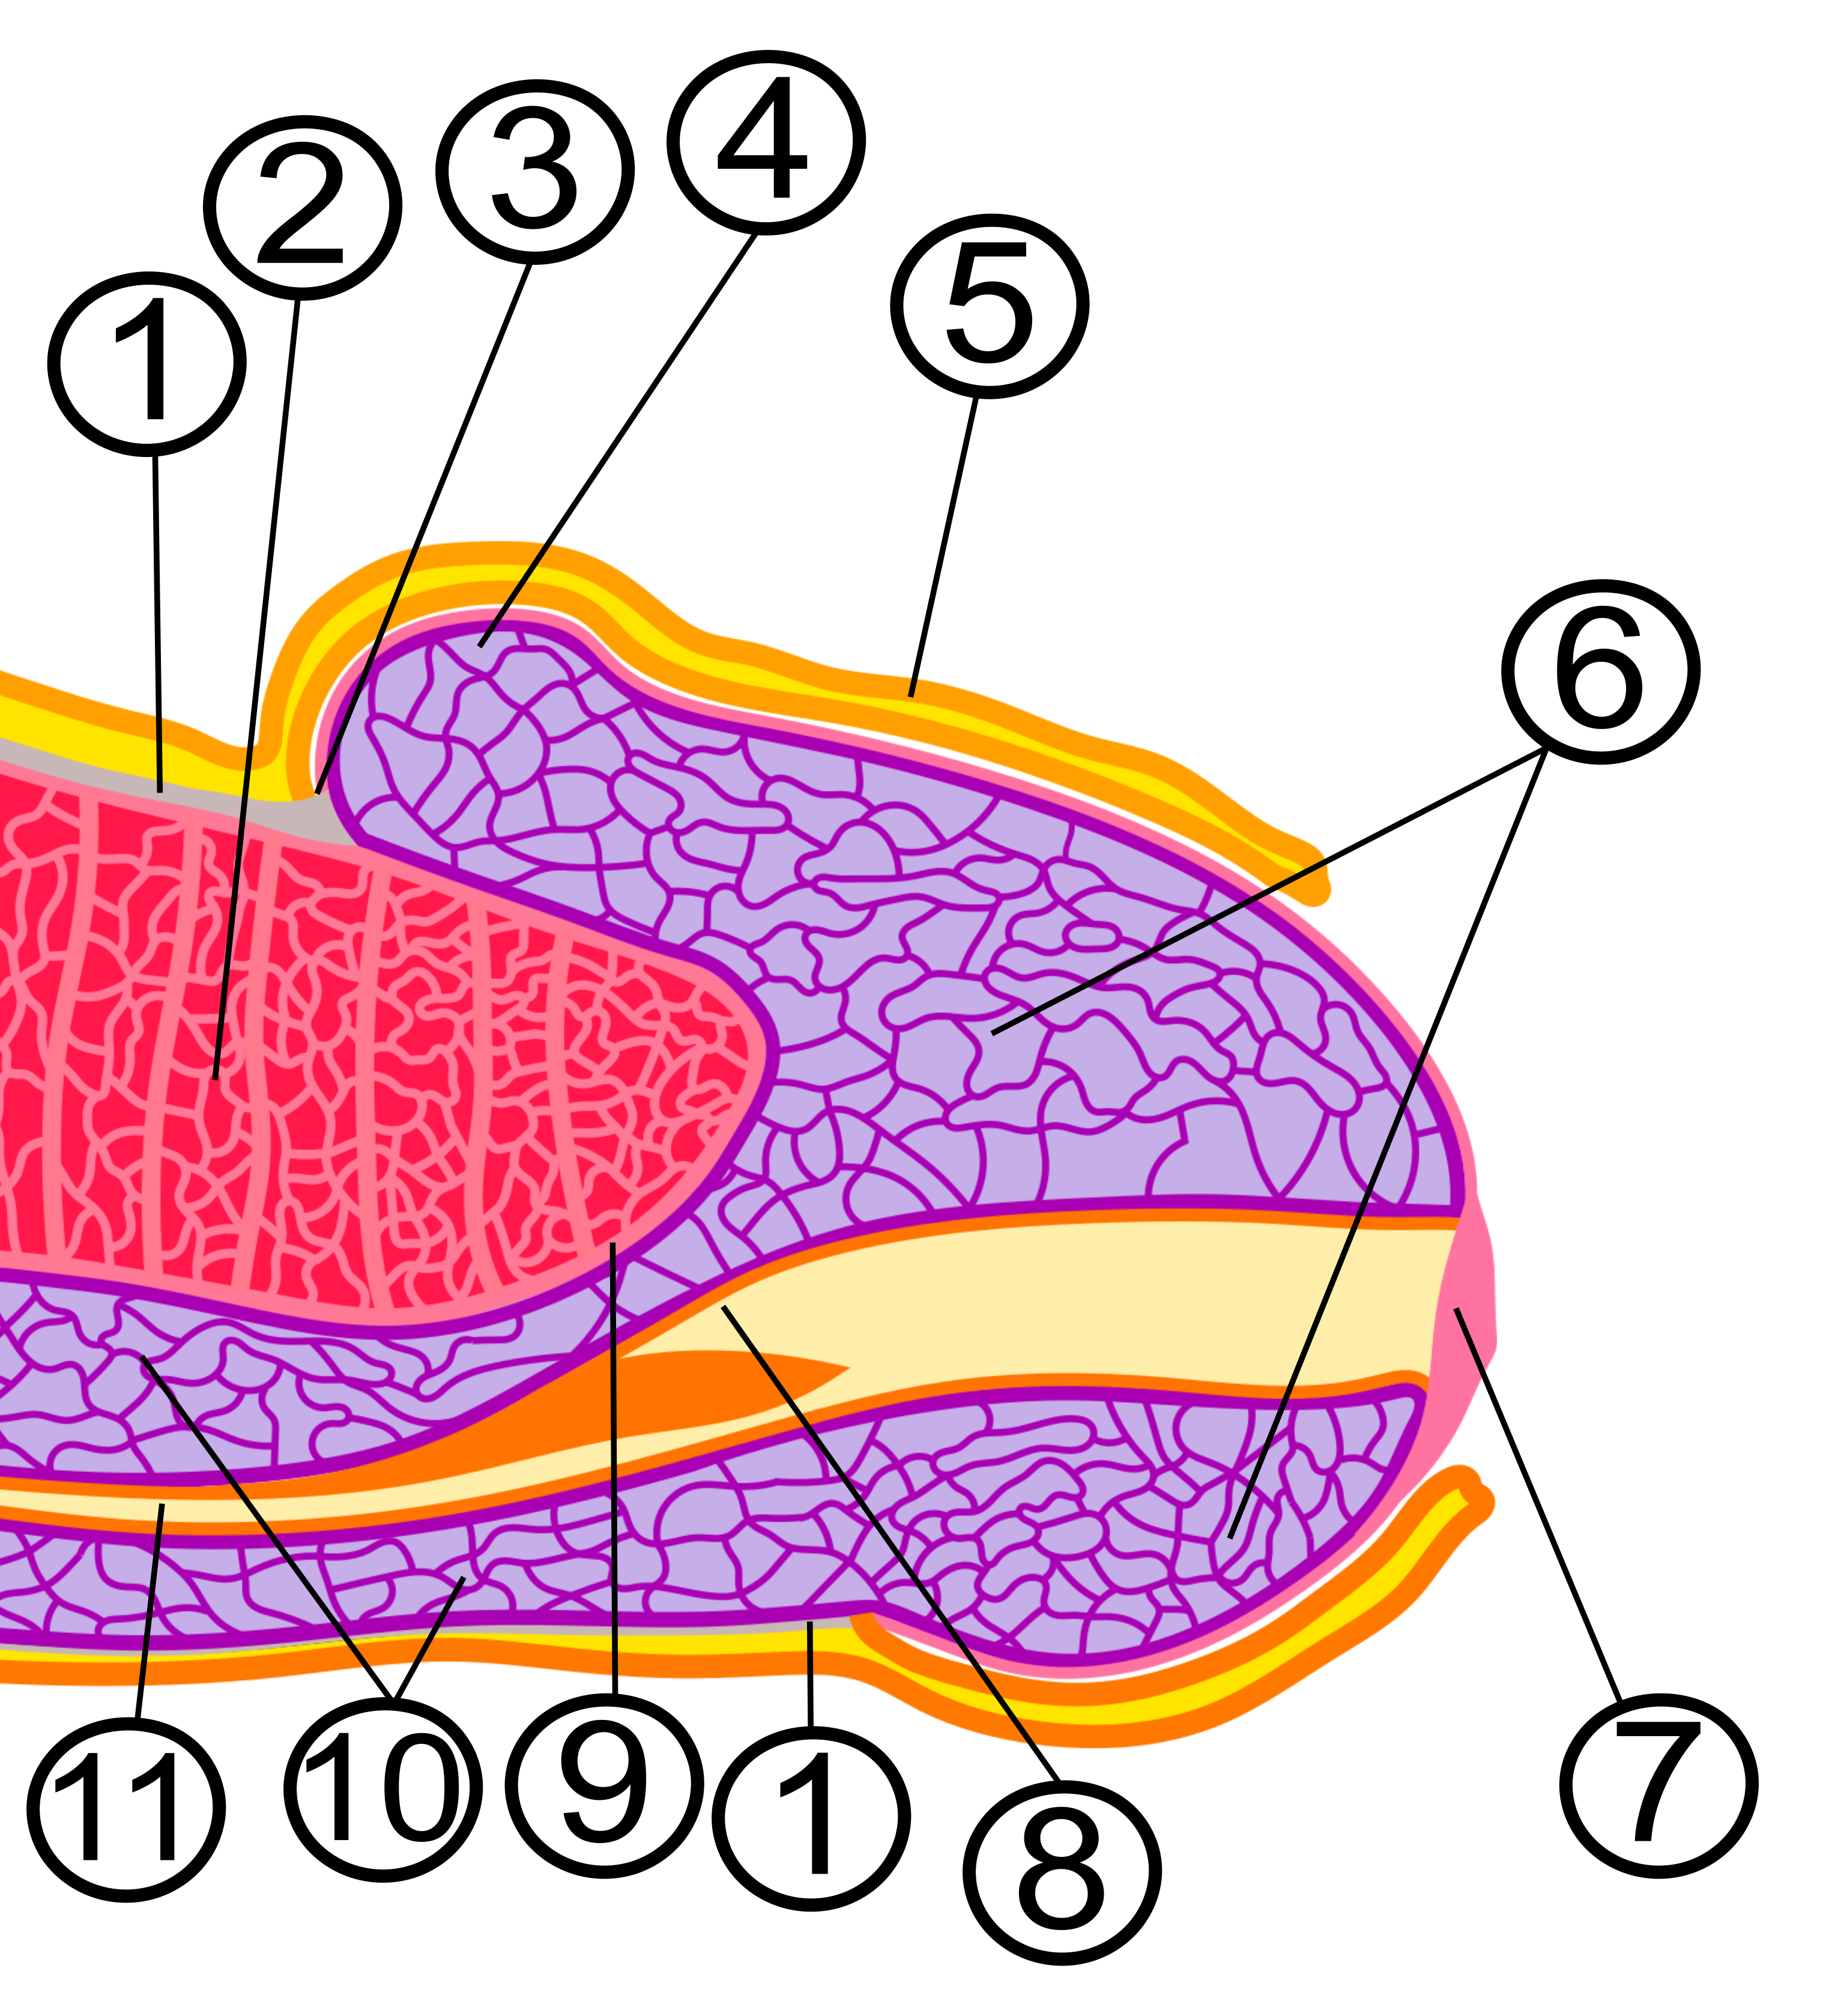 structura descrierii penisului